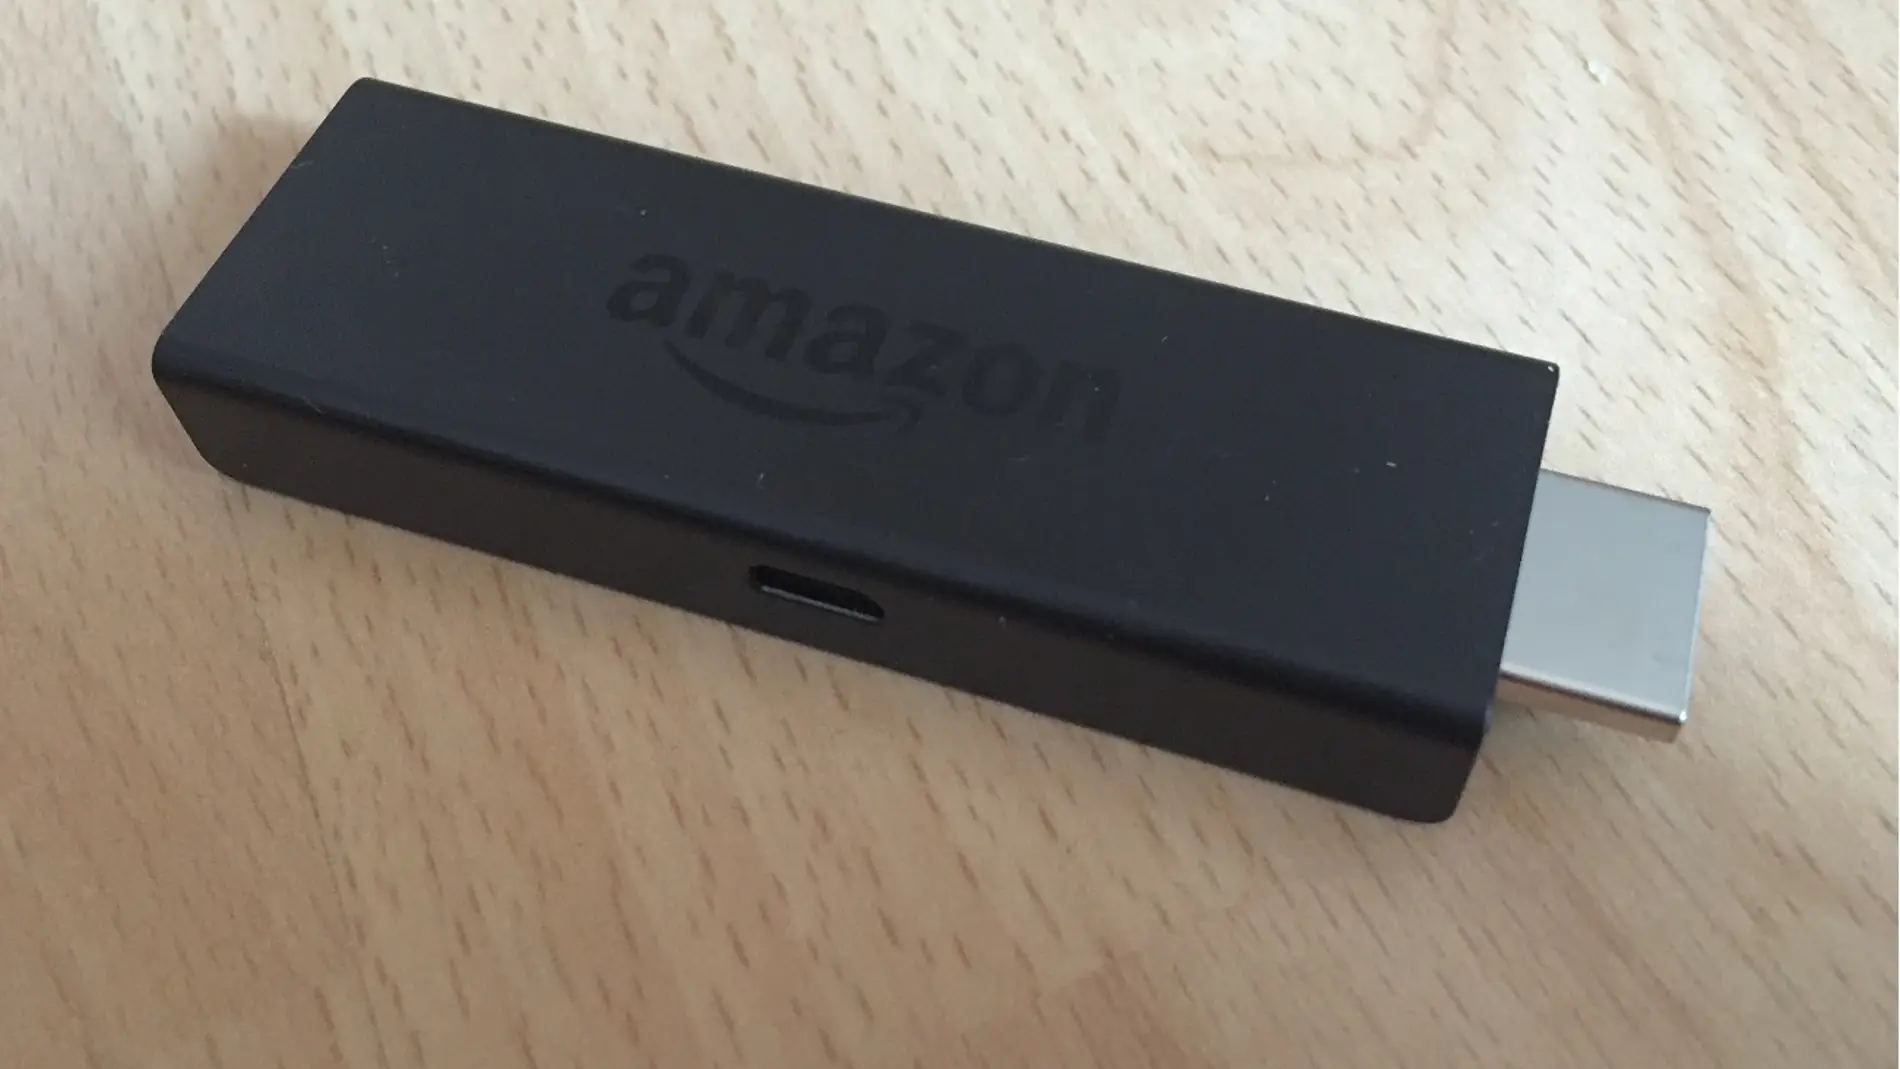 ¿El mando de tu Amazon Fire TV Stick falla? Así lo puedes solucionar